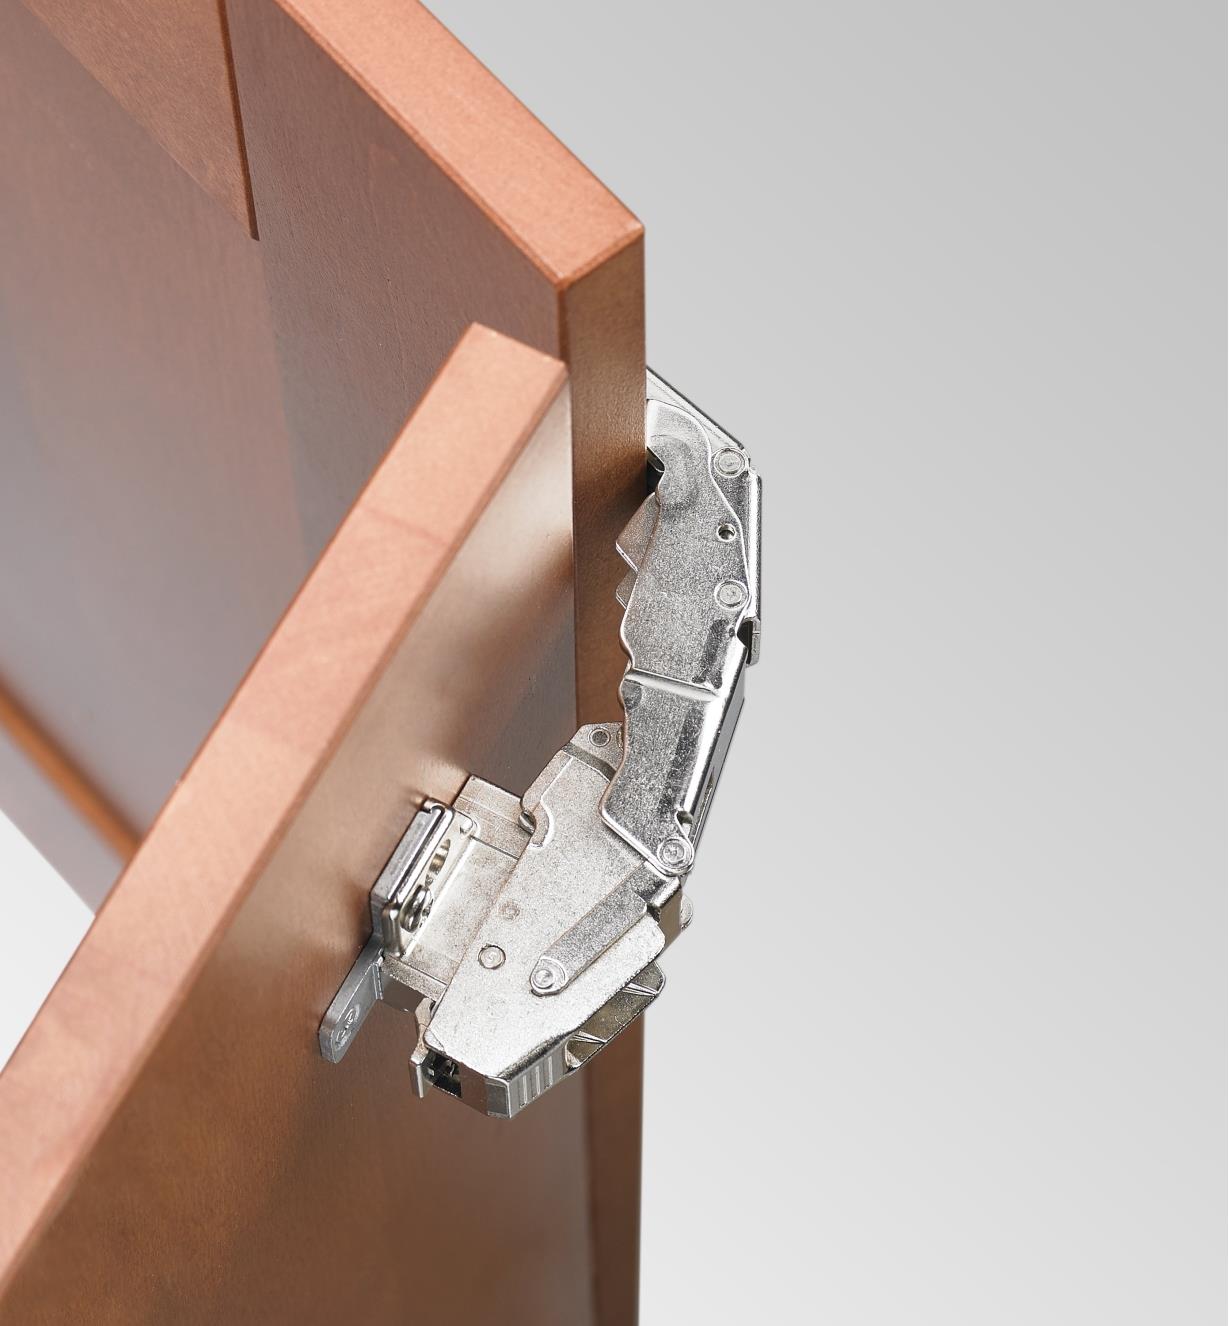 Charnière 155° Clip Top avec amortisseur intégré posée sur une porte encastrée entièrement ouverte